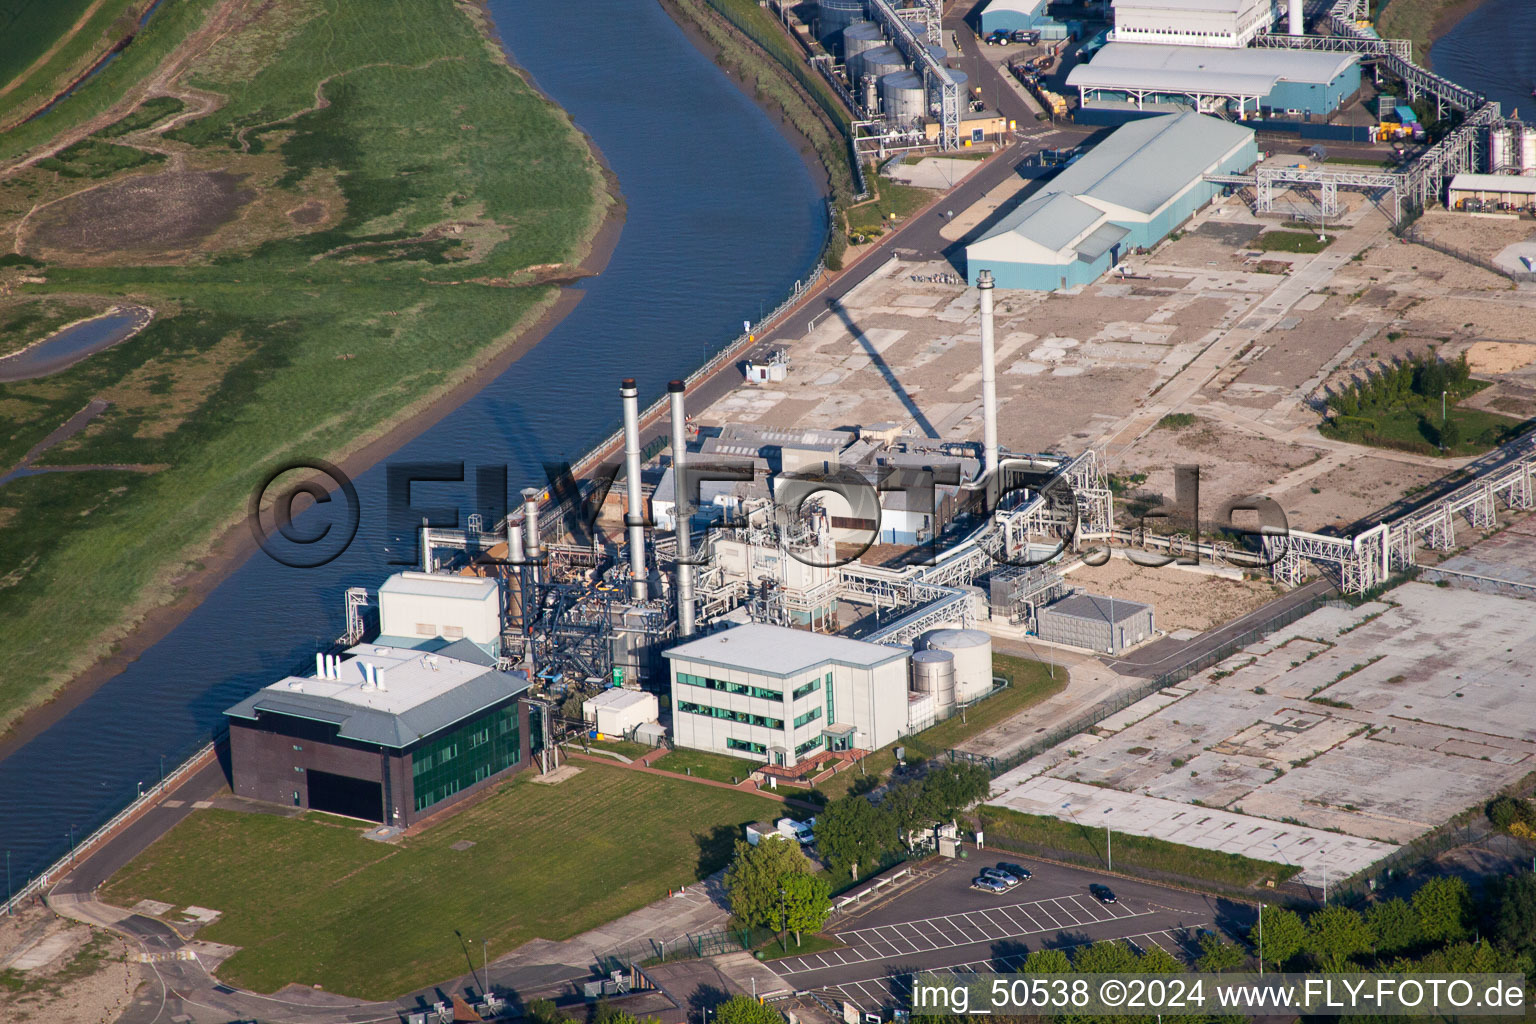 Vue aérienne de Locaux de l'usine du producteur chimique Pfizer Lt à Sandwich dans le département Angleterre, Grande Bretagne